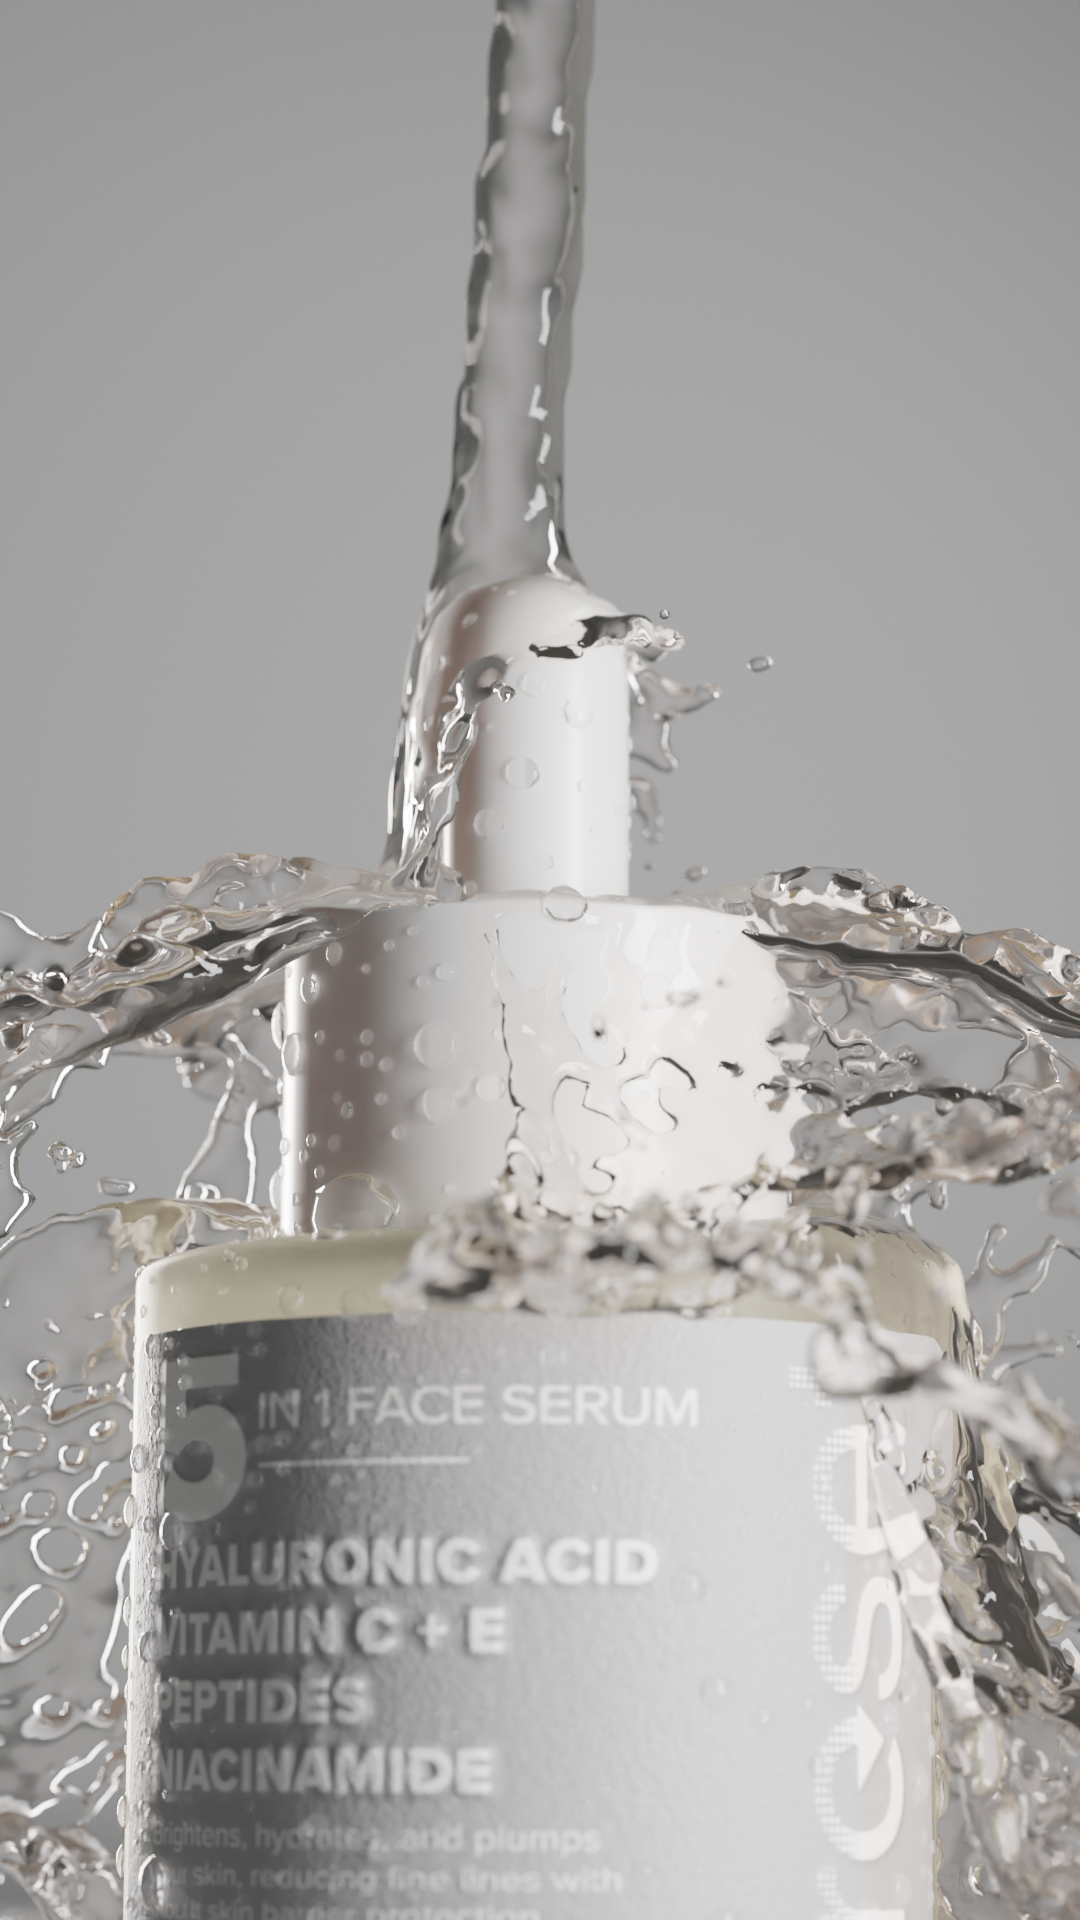 Reset - 5 in 1 Face Serum - Klara Cosmetics